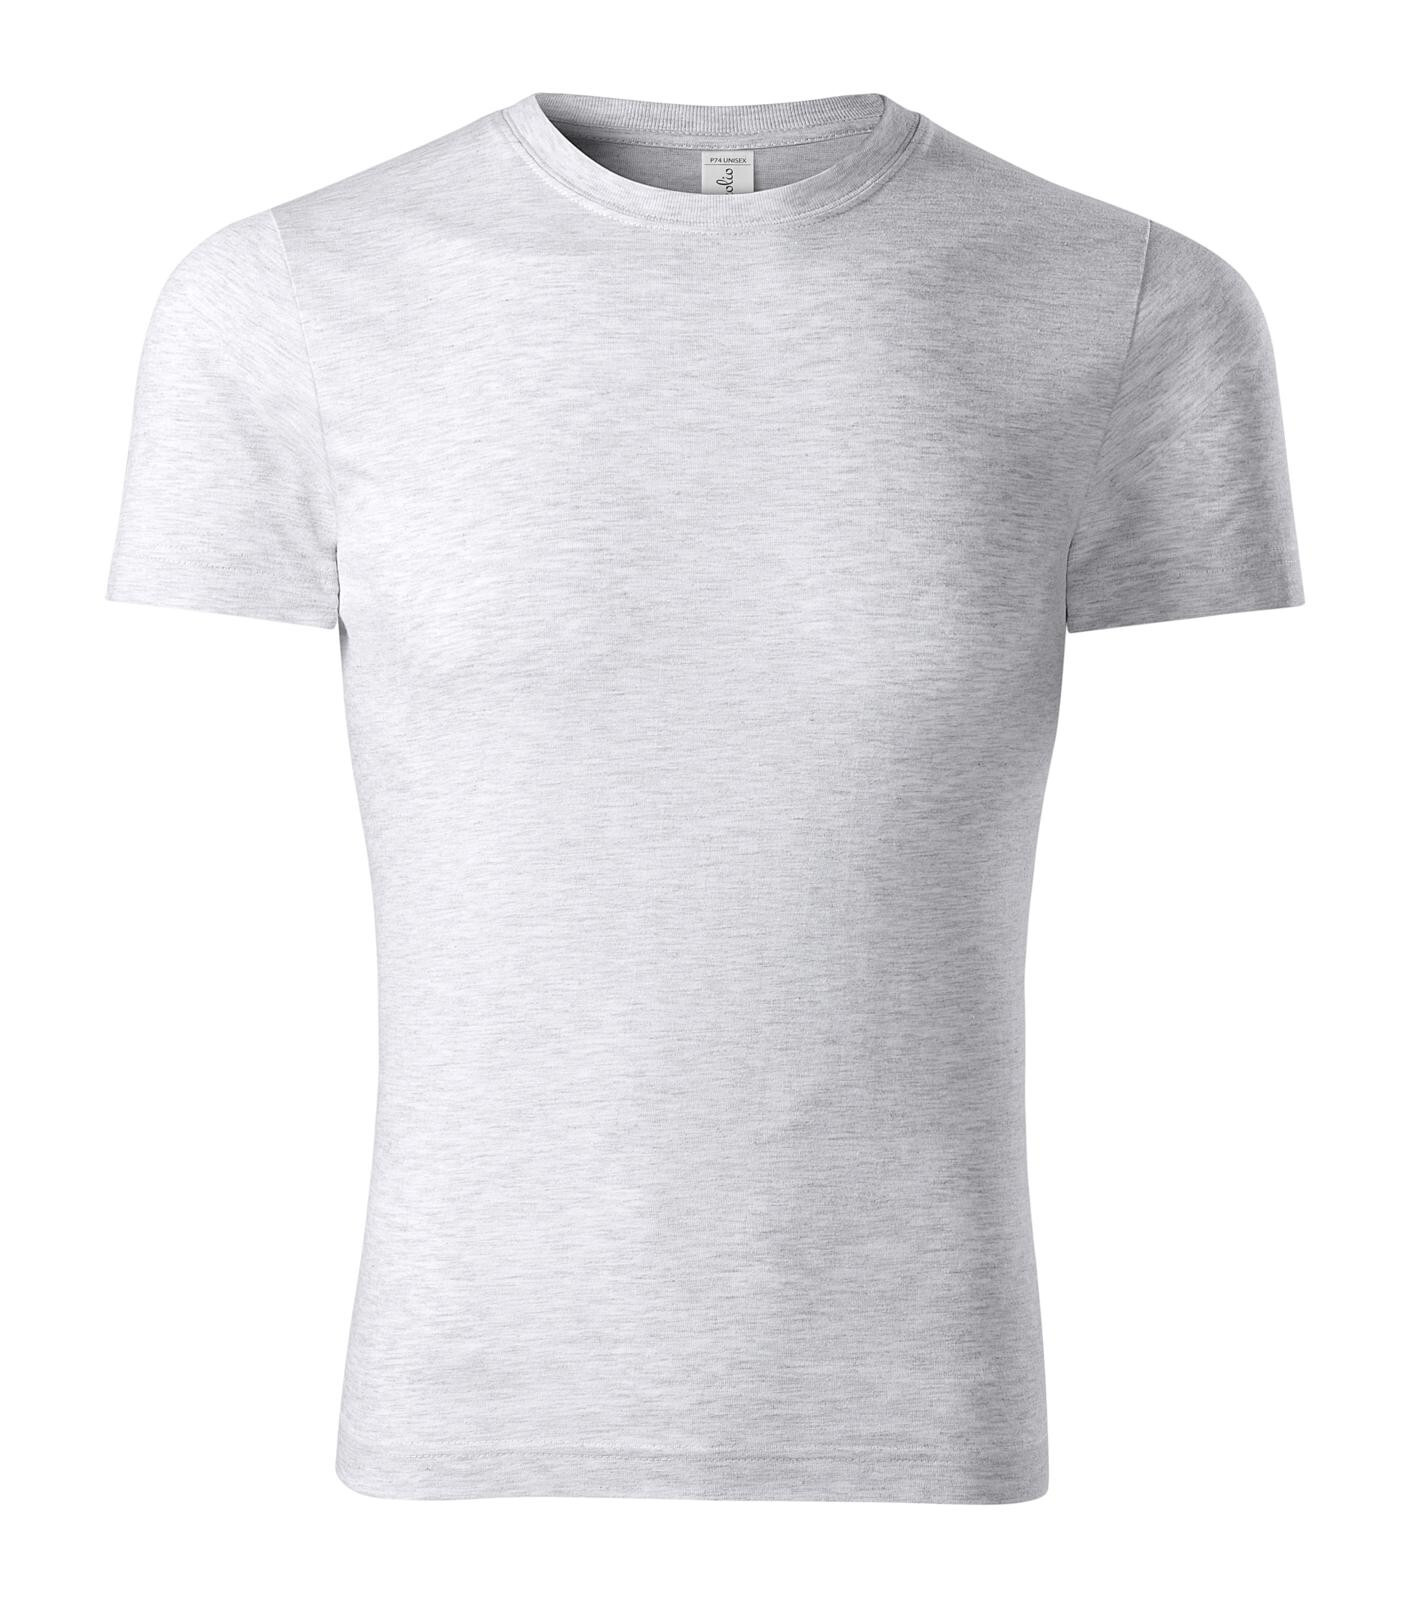 Unisex bavlnené tričko Piccolio Peak P74 - veľkosť: L, farba: svetlosivý melír